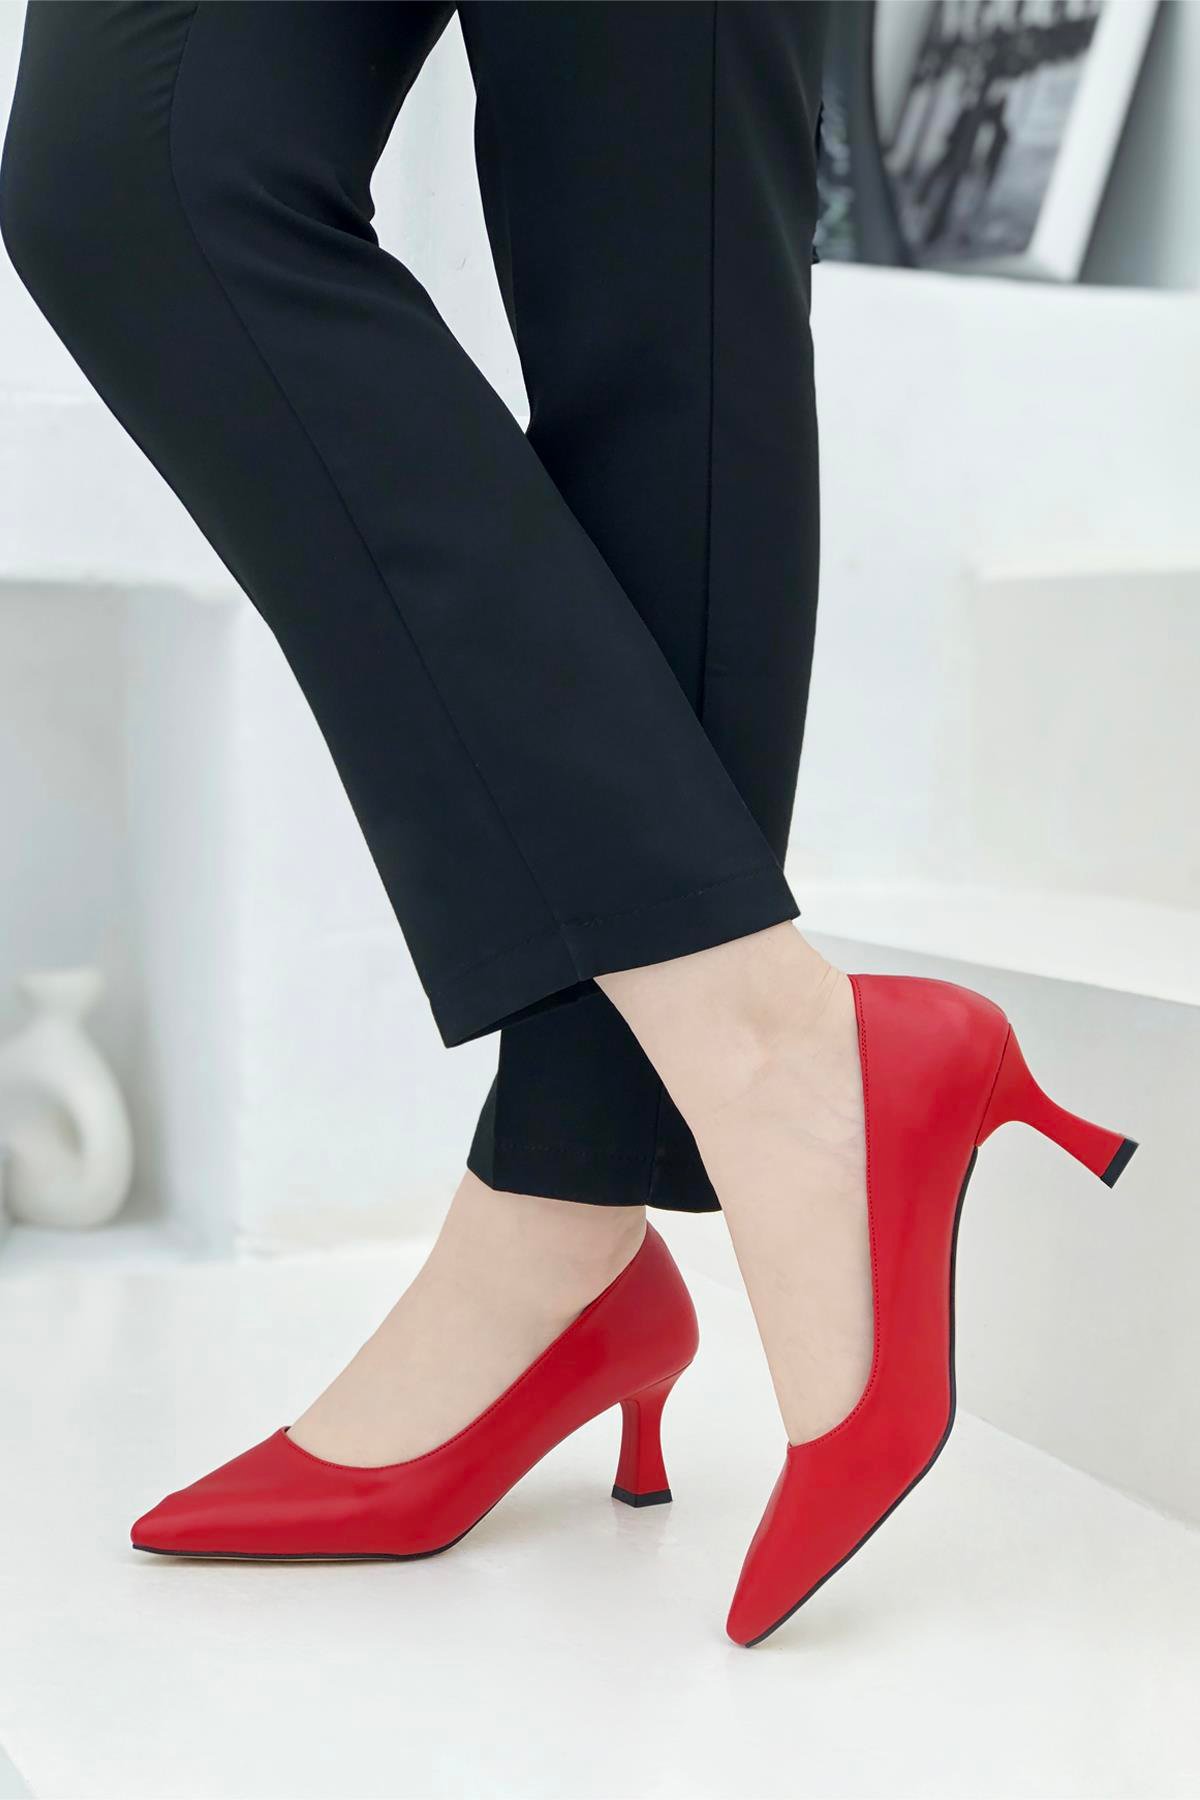 Kadeh Topuk Alçak Topuklu Kadın Stiletto Kırmızı Alya Carla Bella | Mybella  Shoes